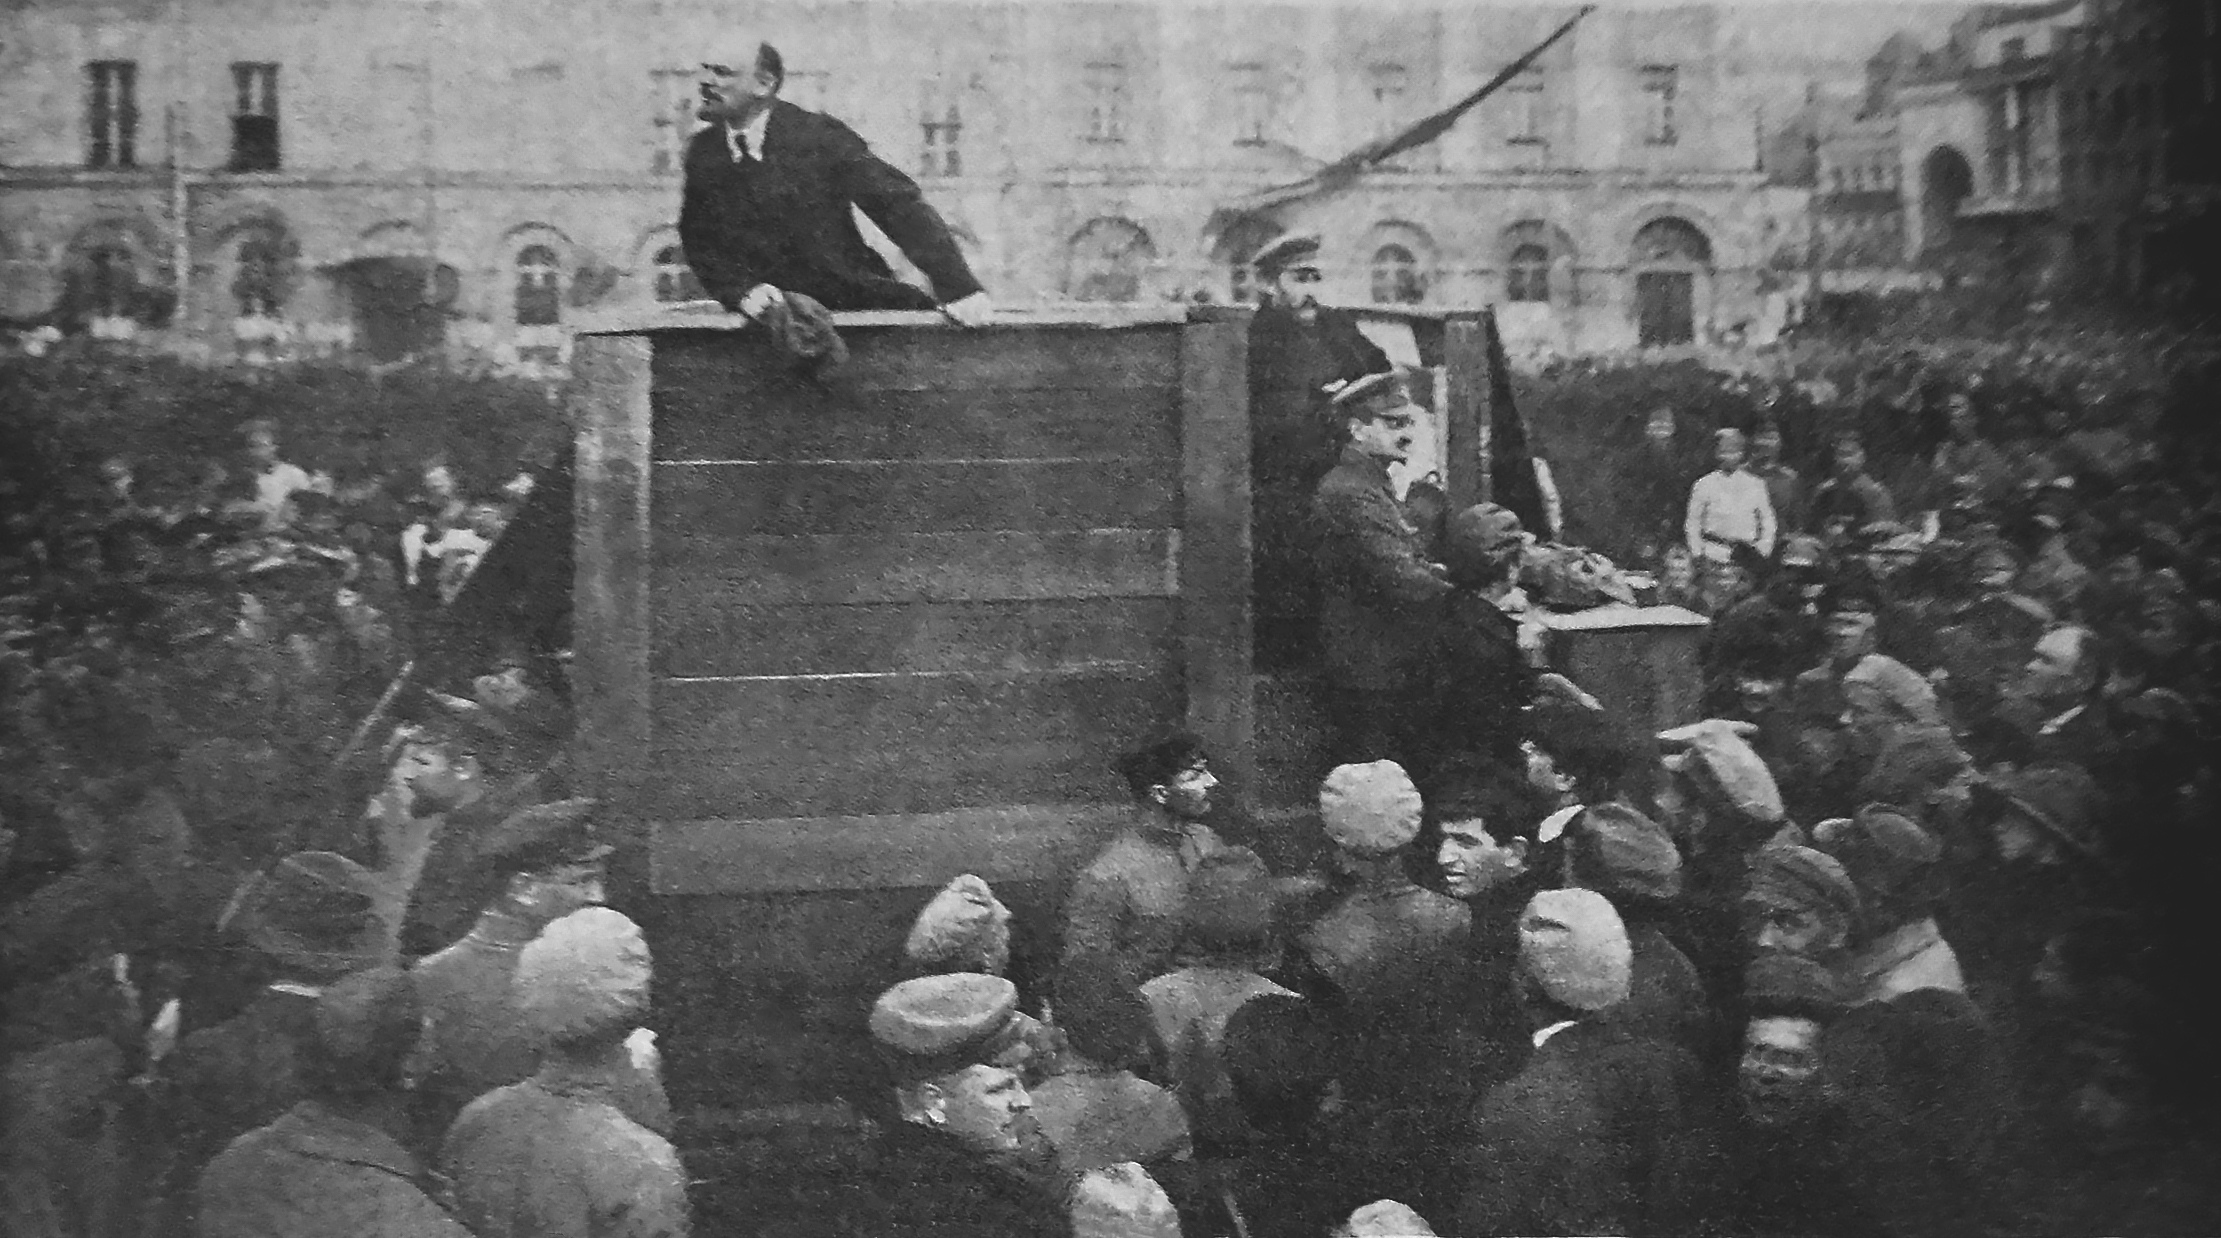 Lenin speaking state Image public domain